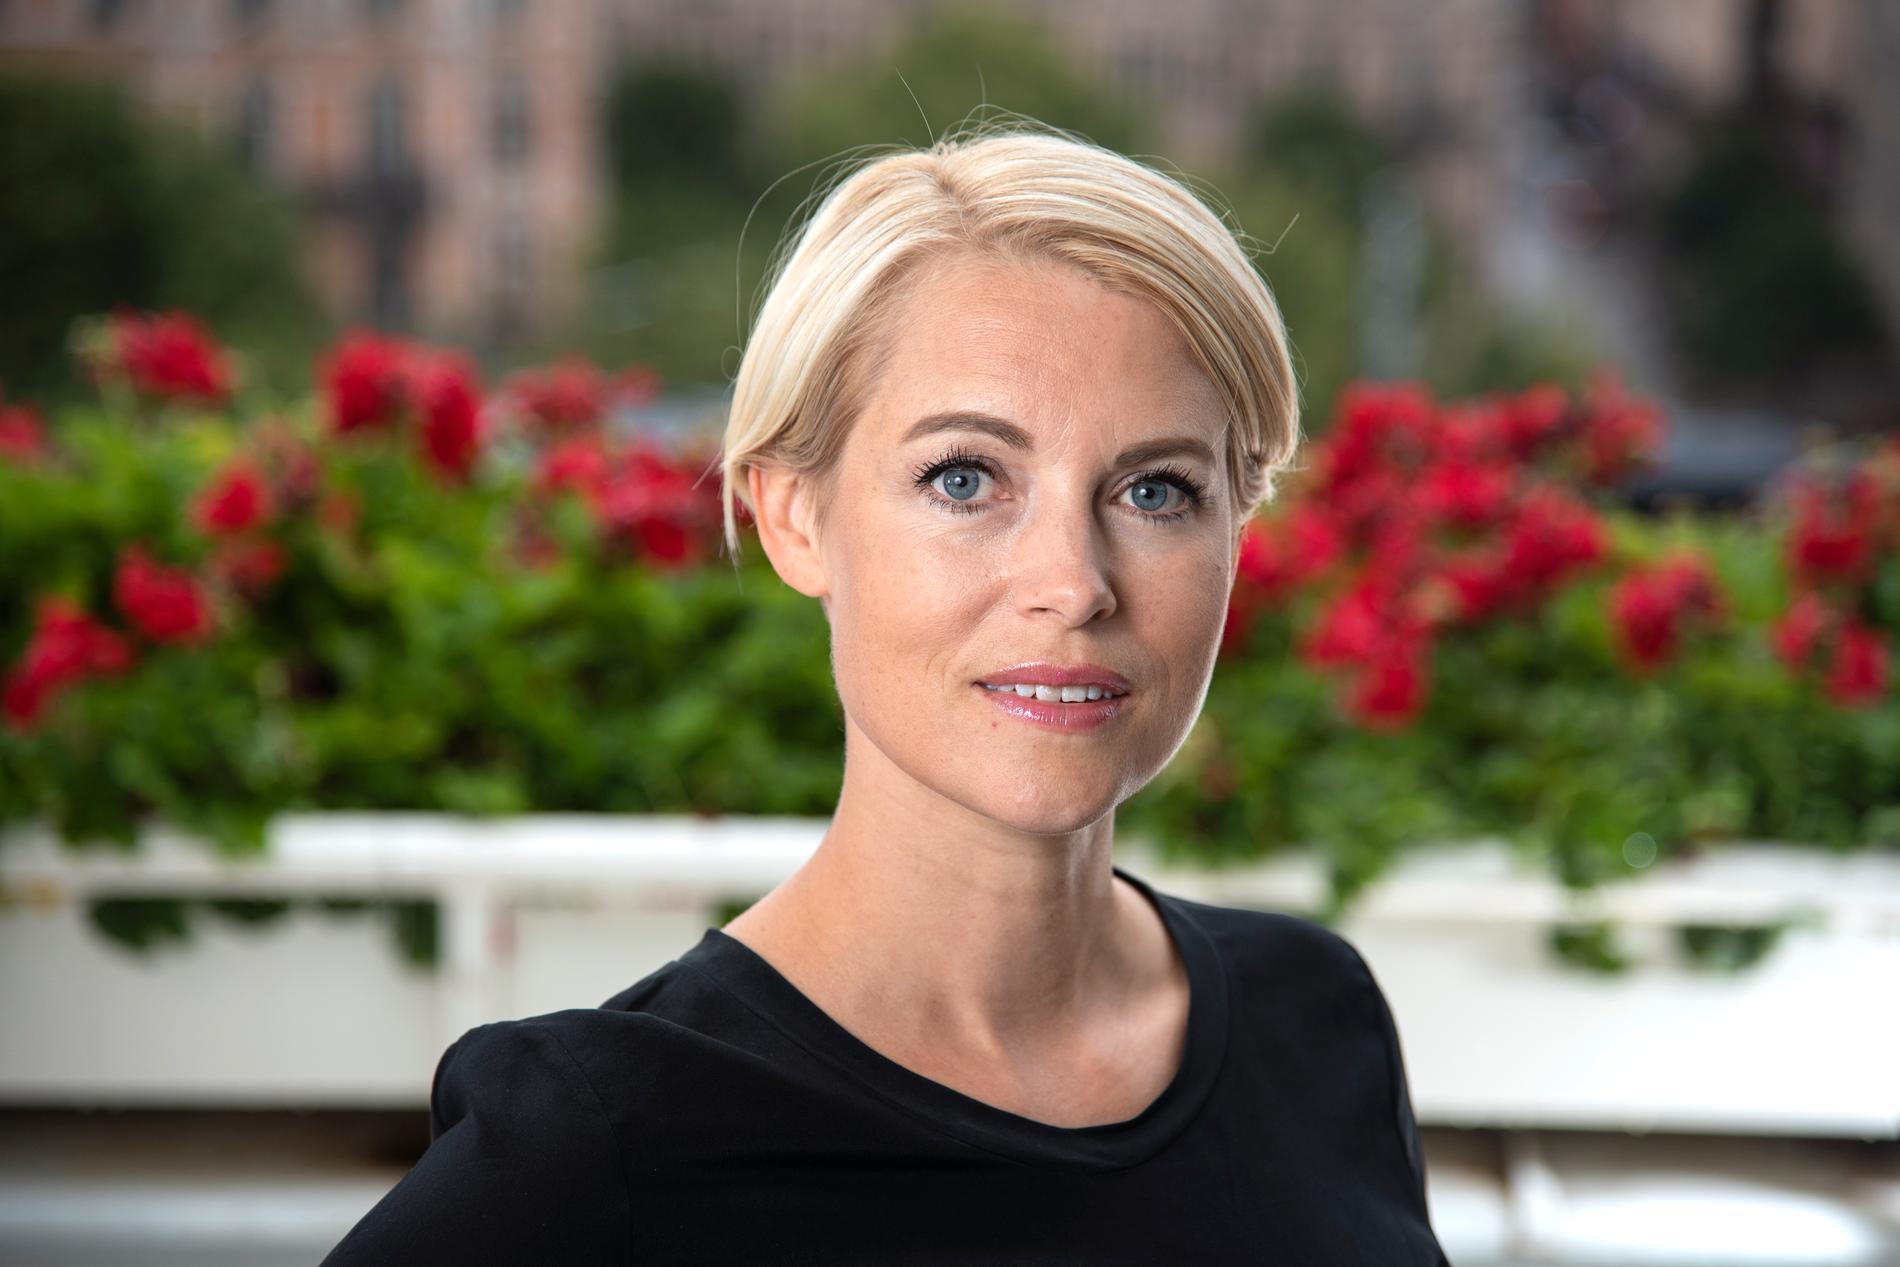 Riskkapitalisten Sara Wimmercranz är en av drakarna i "Draknästet" som gör comeback i SVT.